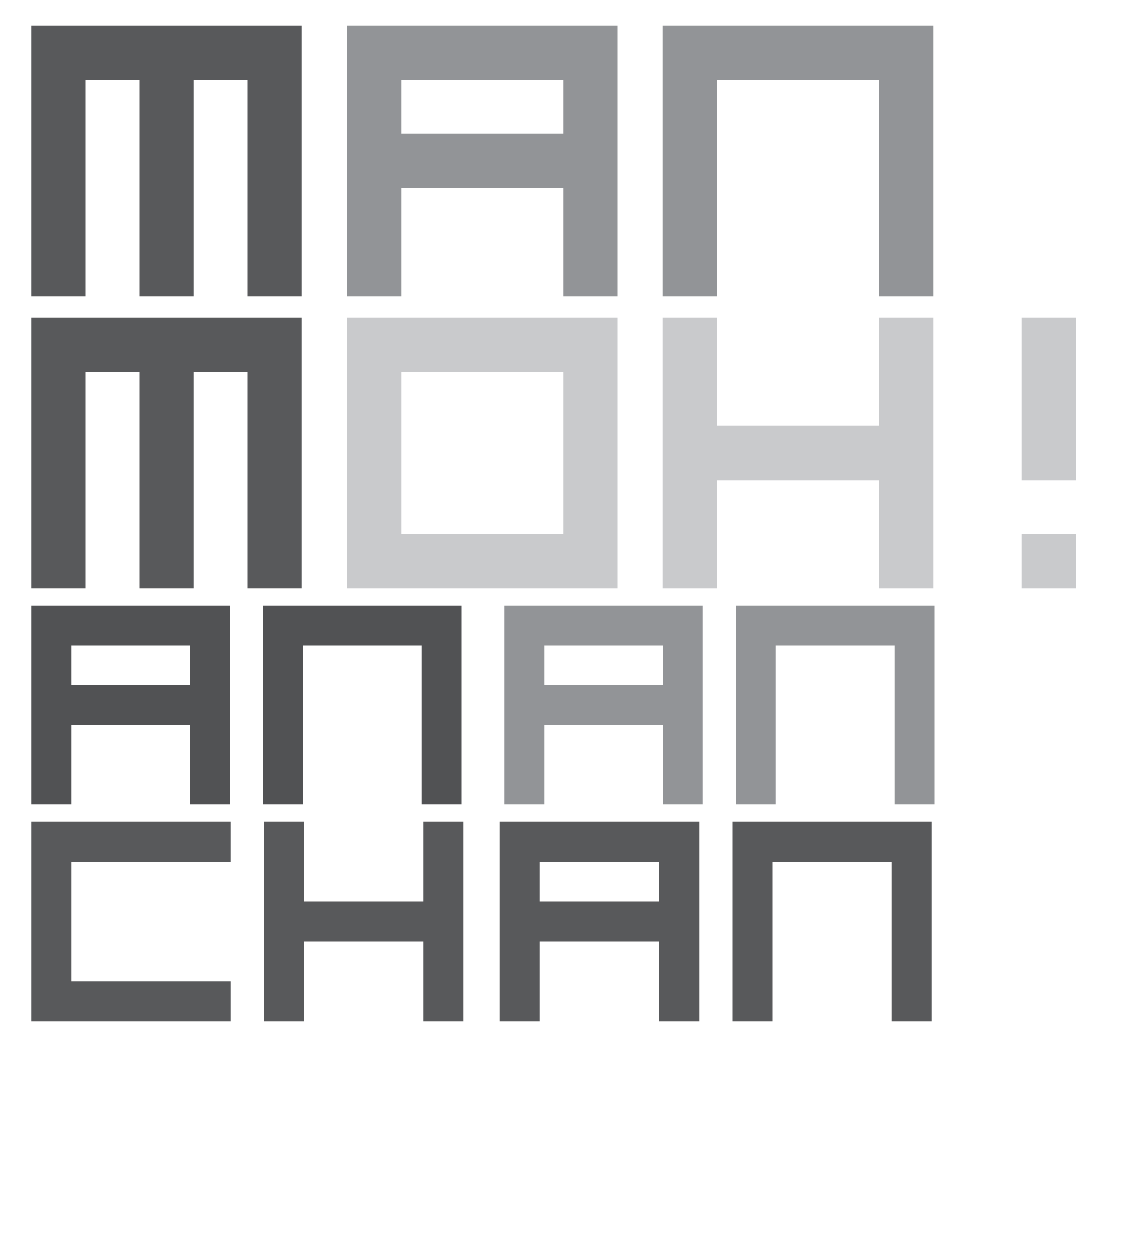 Manmohan Anchan